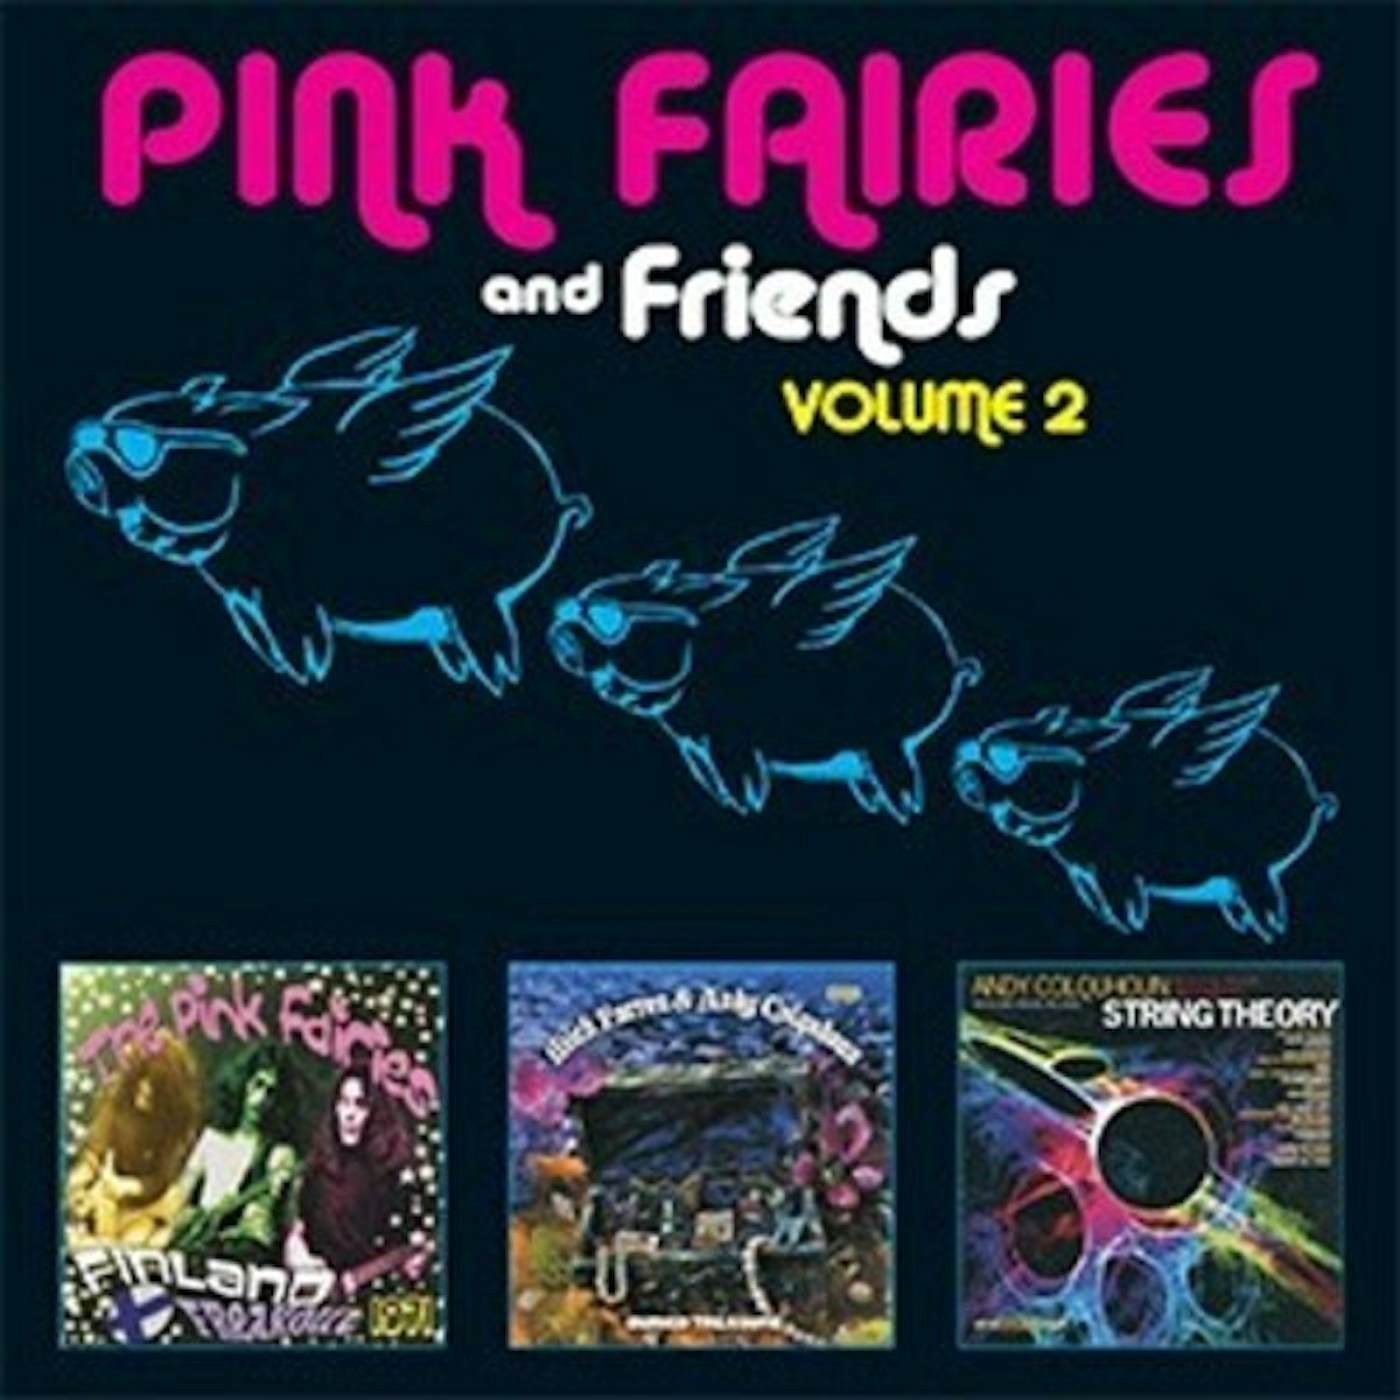 The Pink Fairies & FRIENDS VOL 2 CD